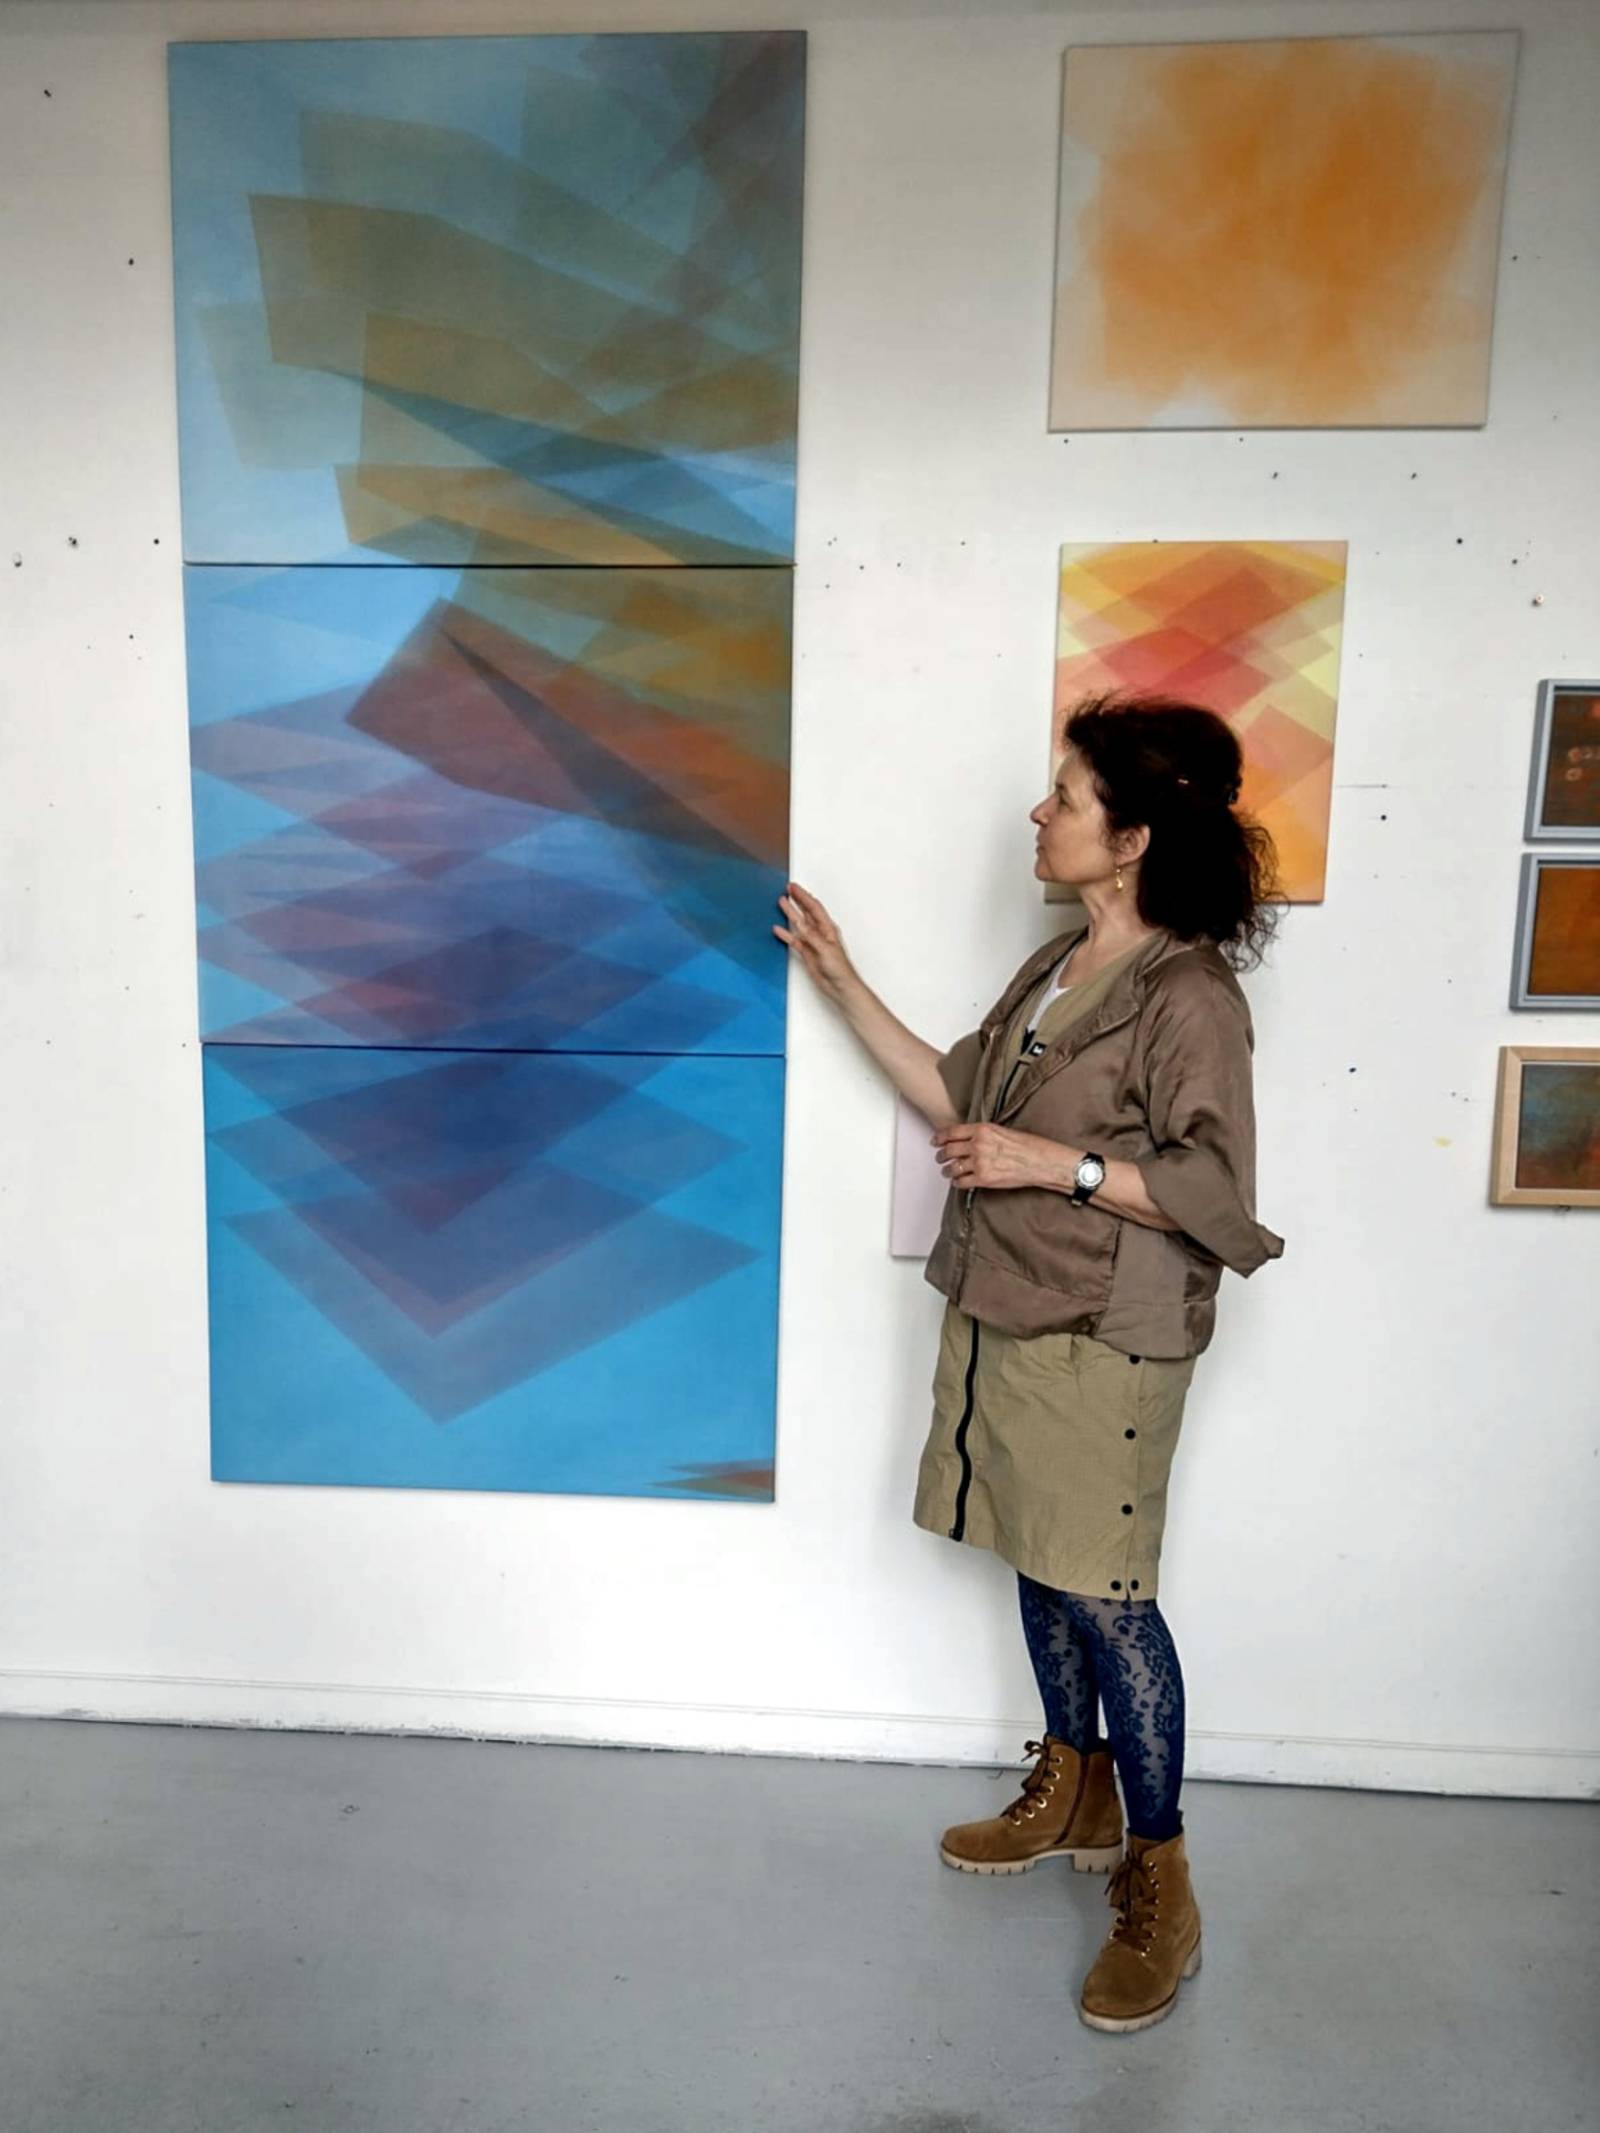 Eine Künstlerin zeigt Bilder an der Wand ihres Ateliers.